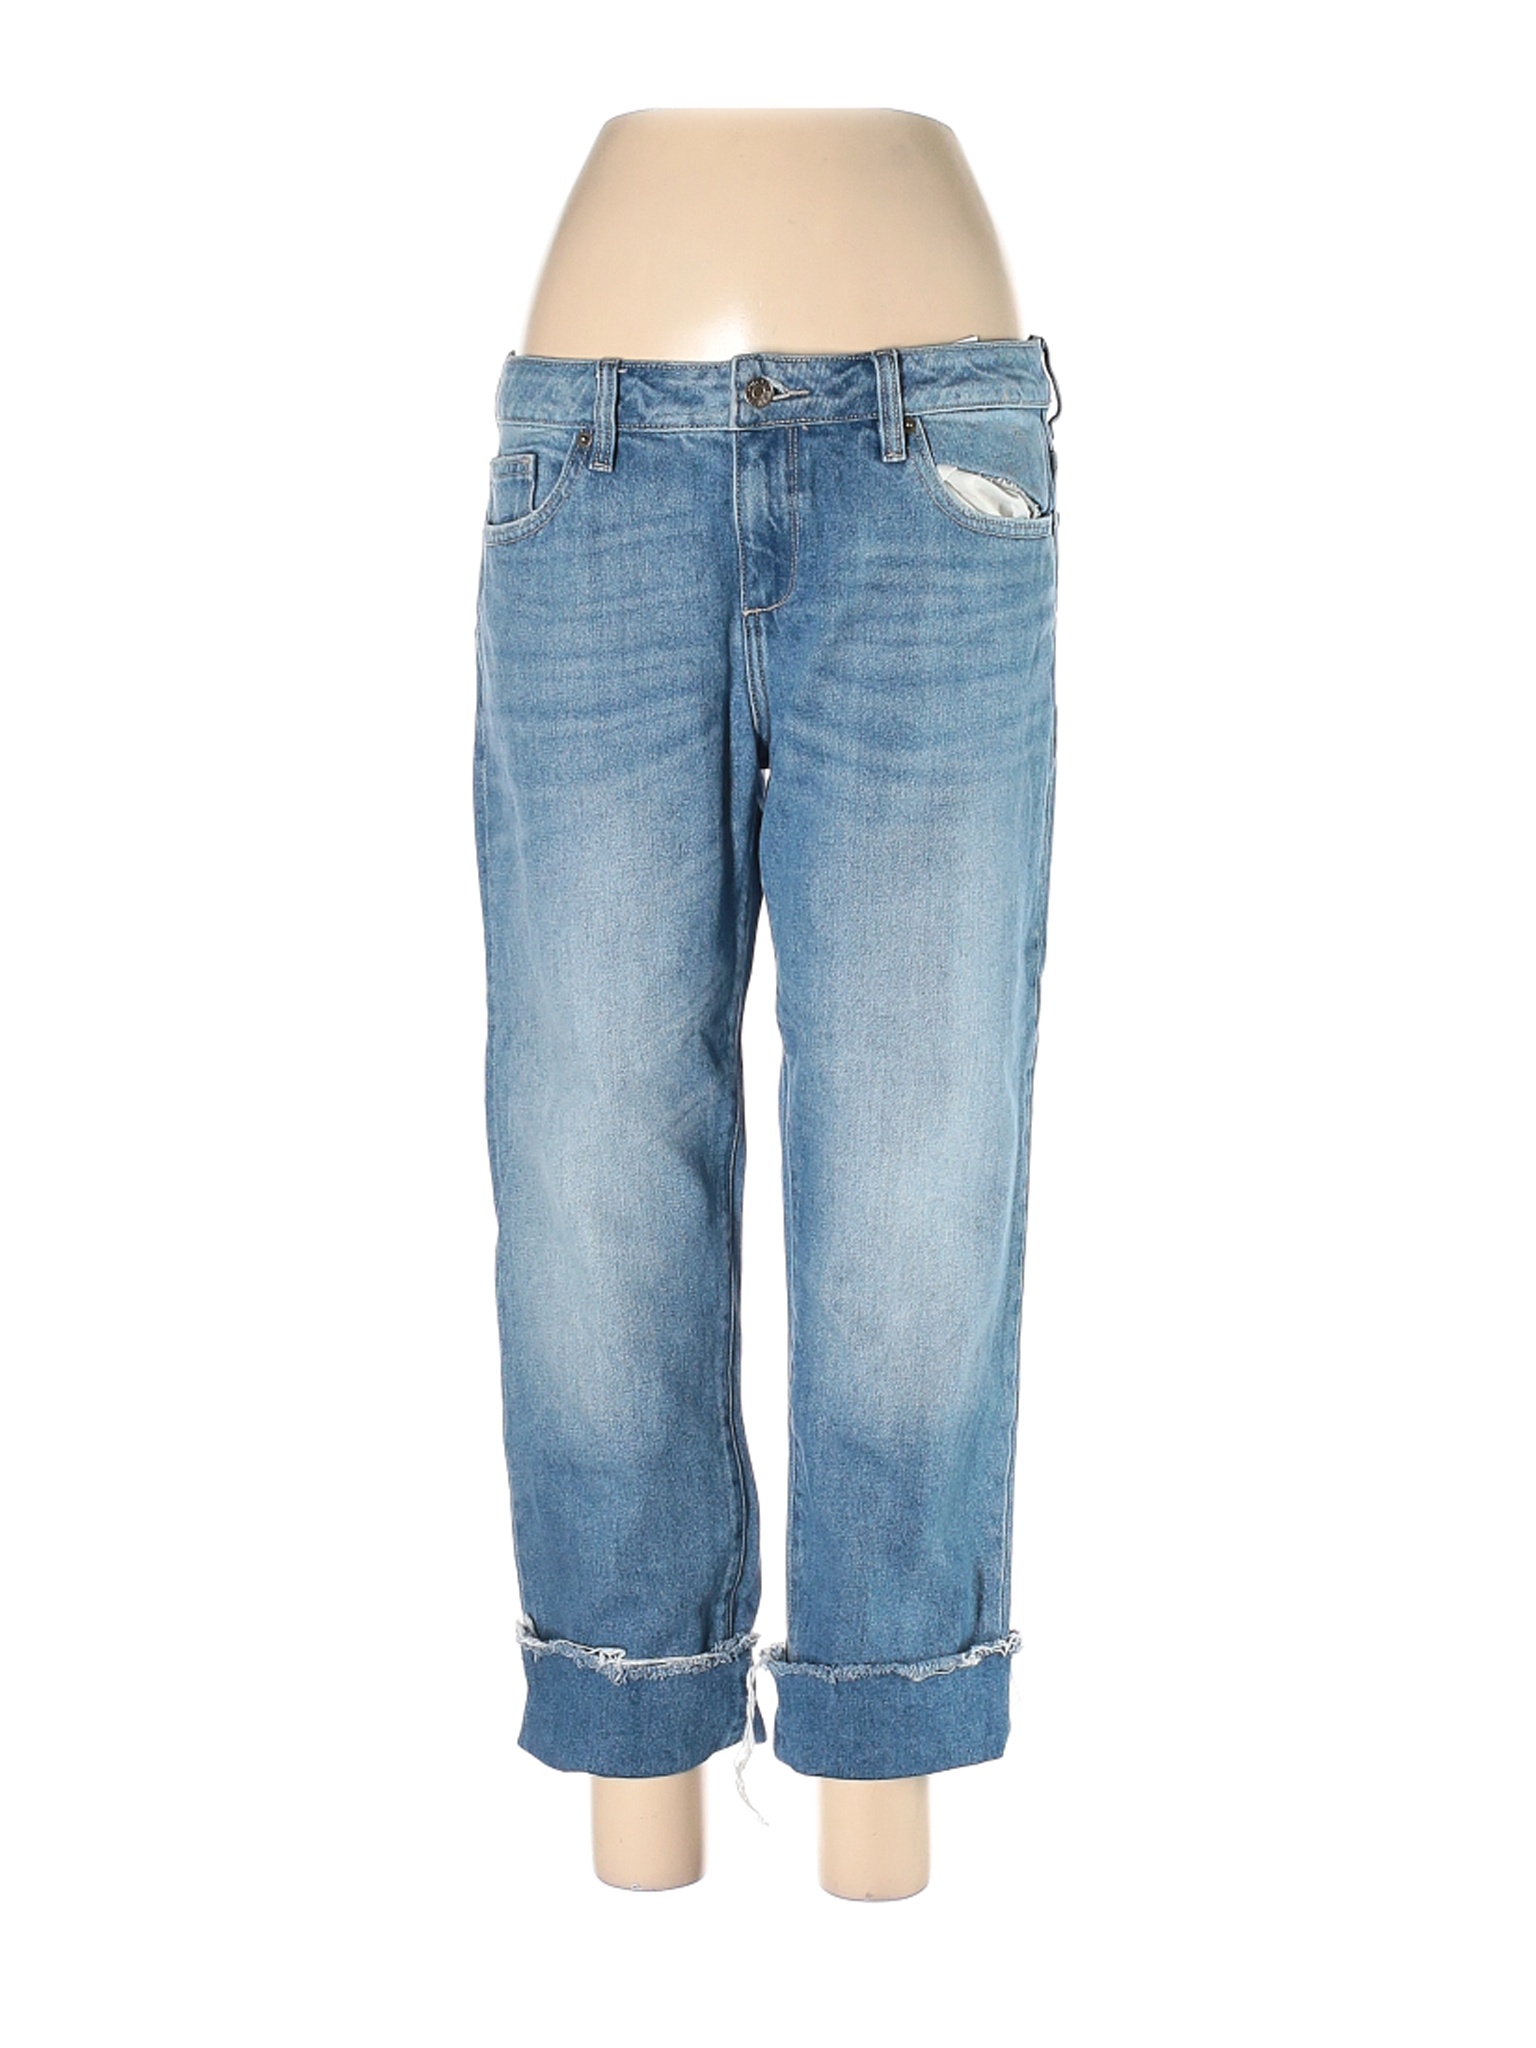 Hidden Jeans Women Blue Jeans 30W | eBay